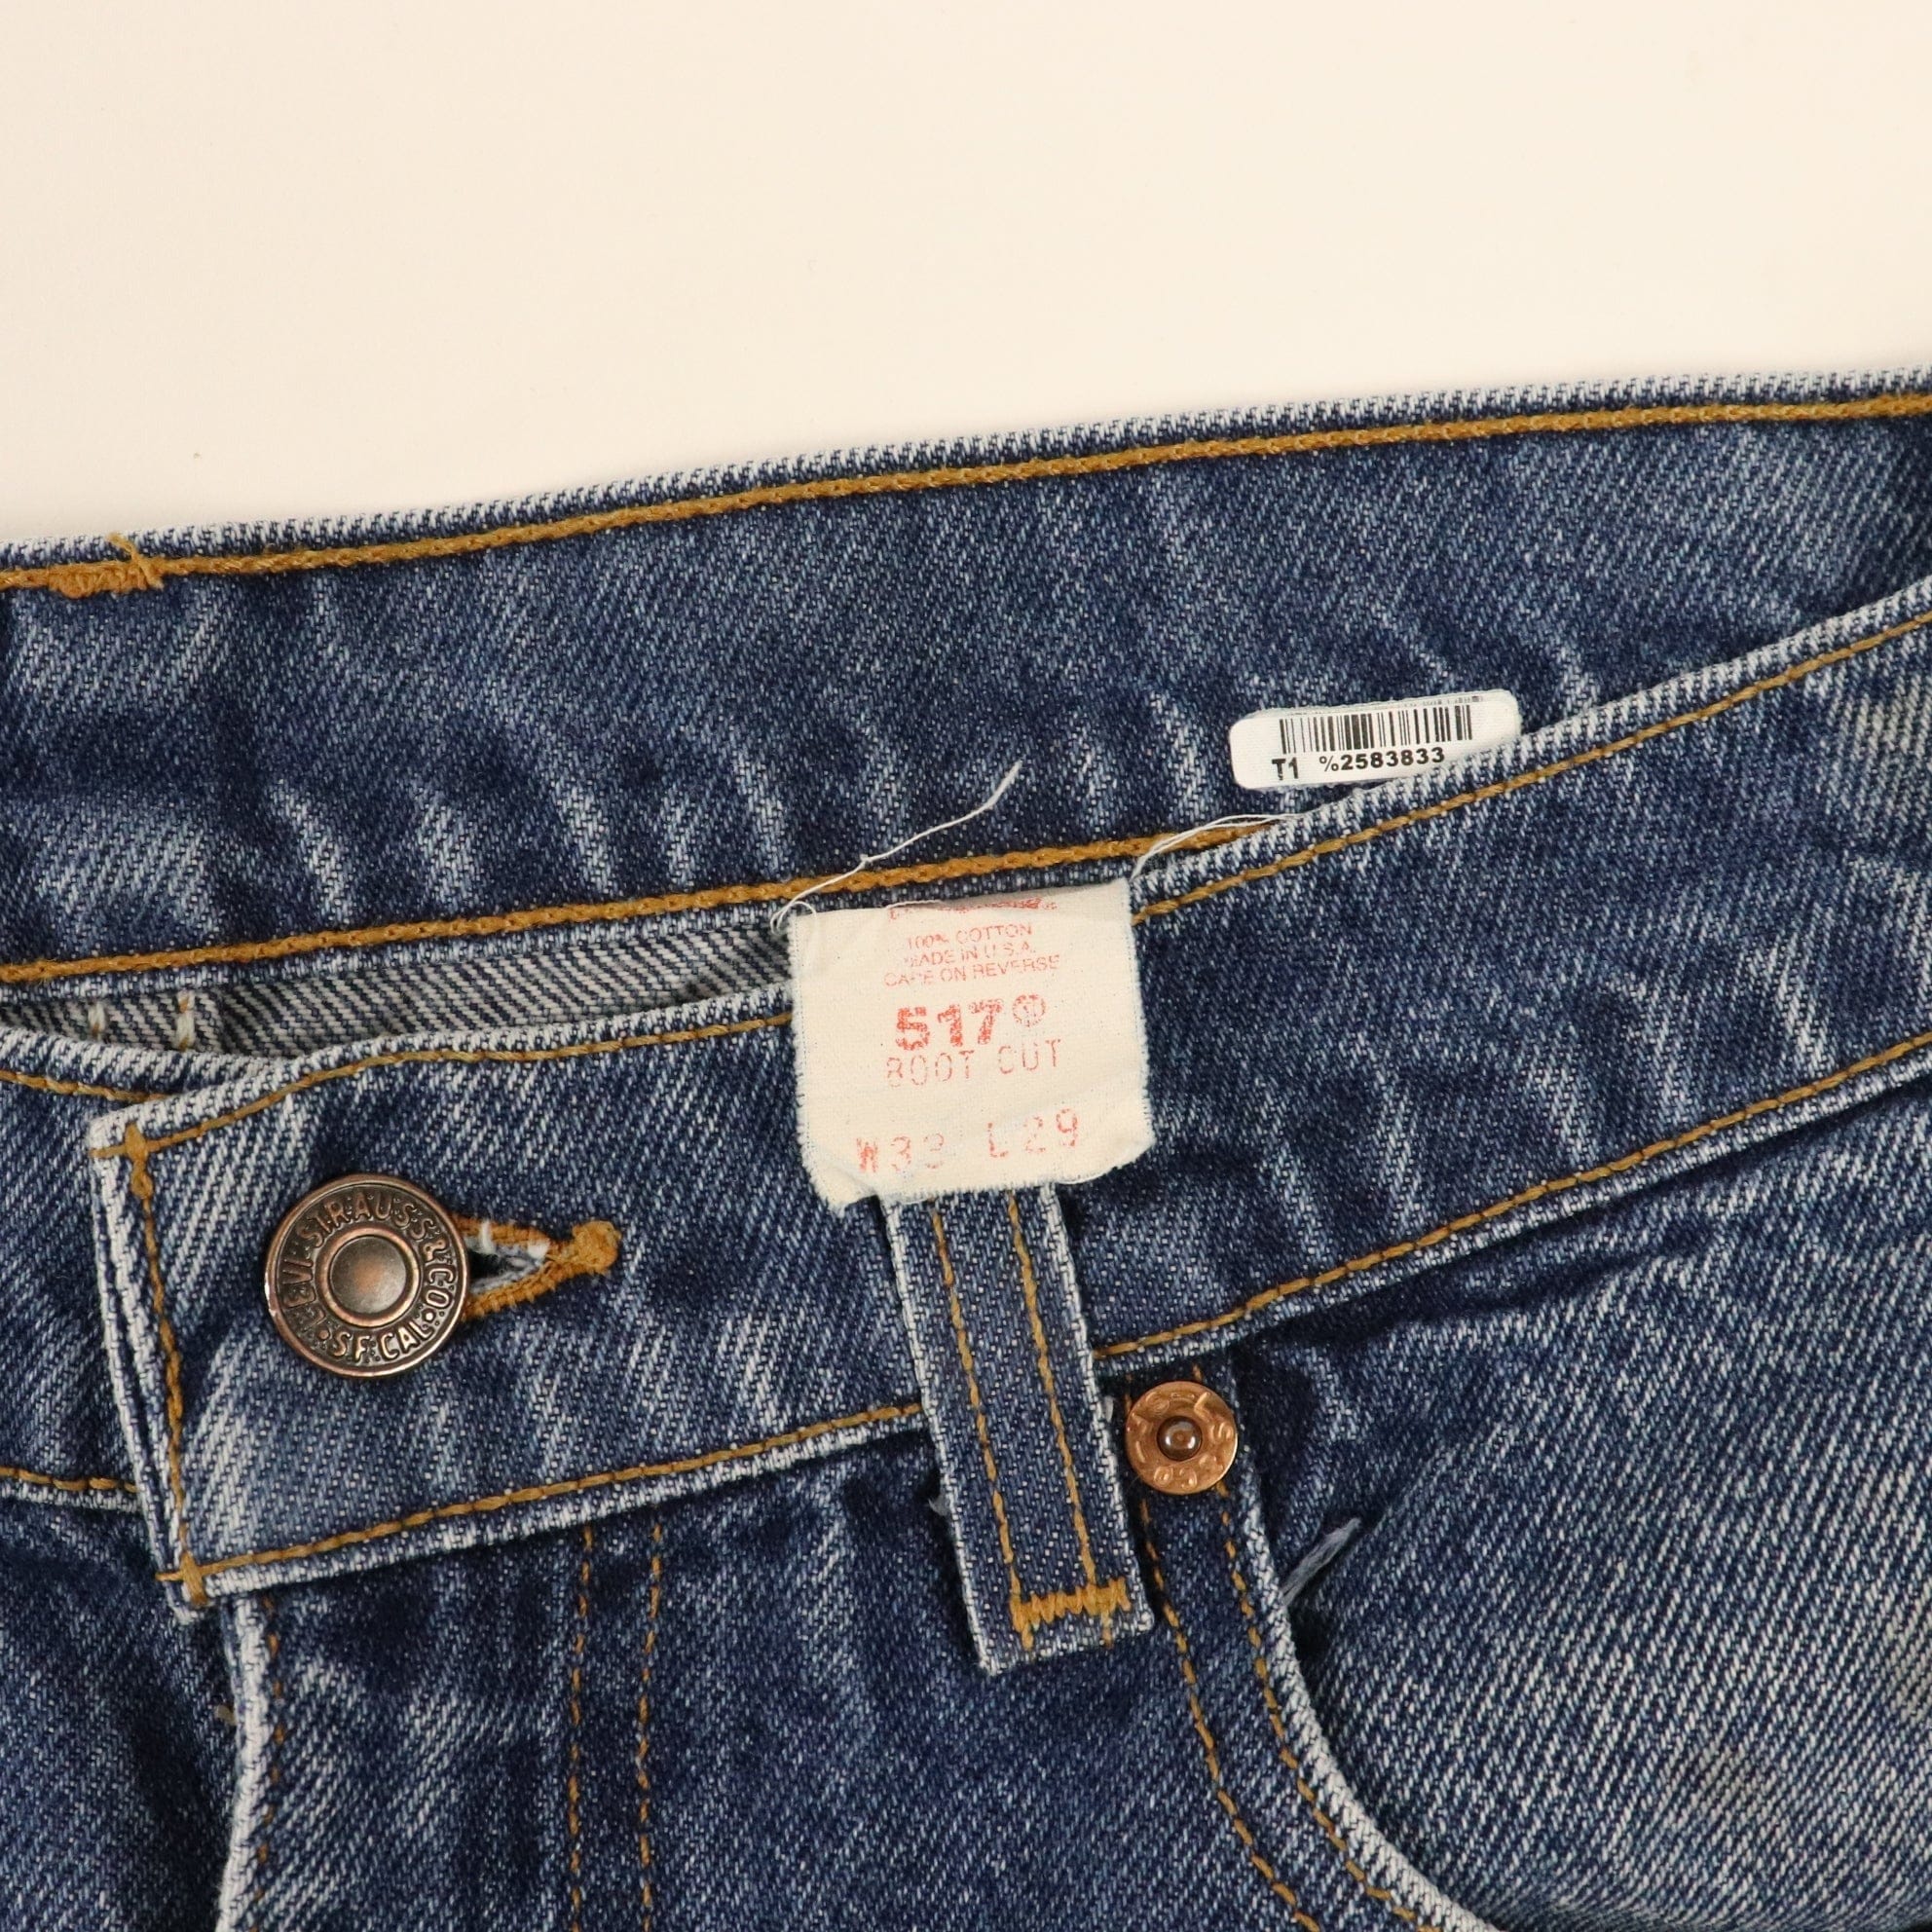 Vintage Levi's 517 Bootcut Starched Denim Jeans Size 33 x 29 Fits 31 x 29